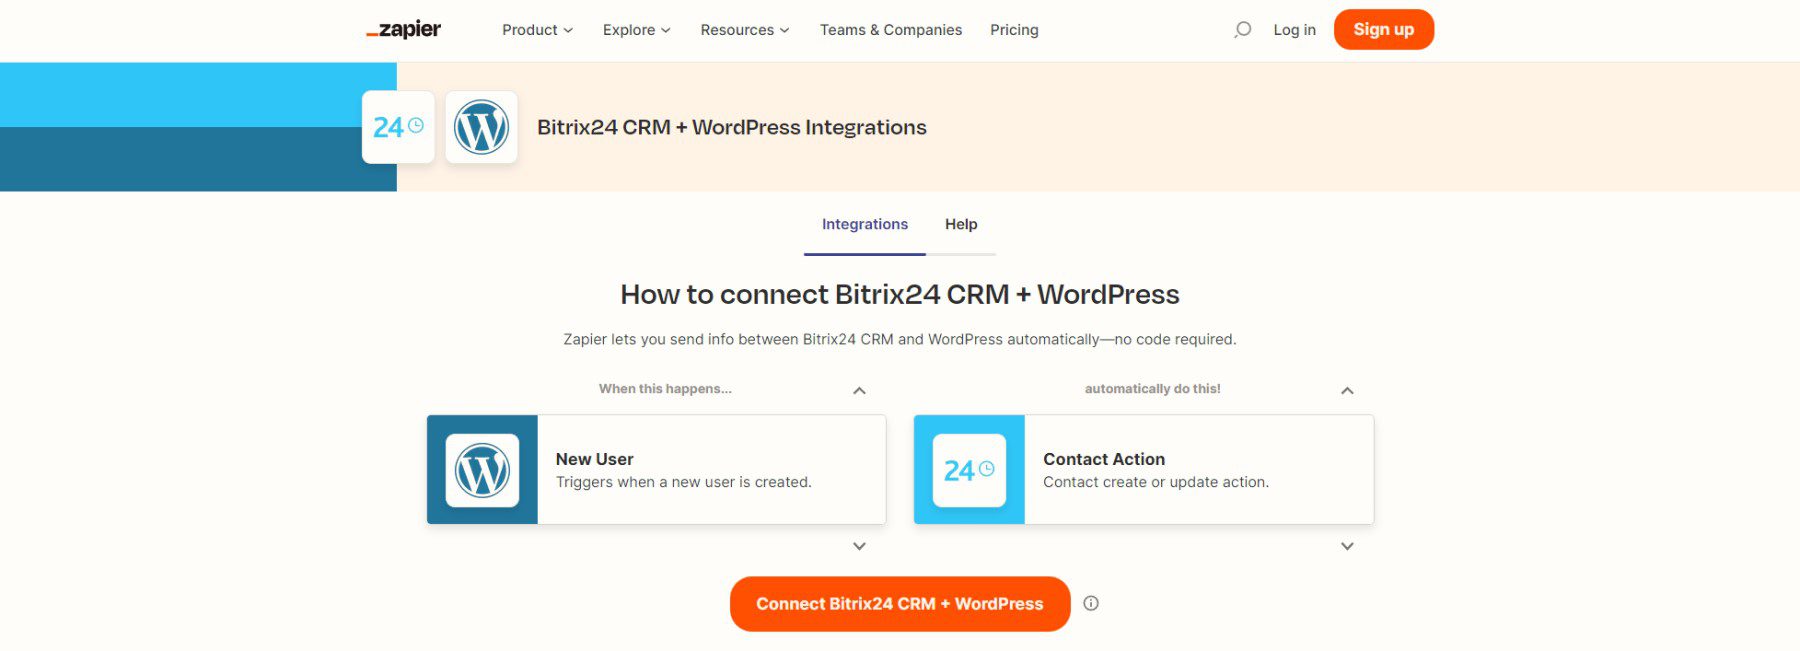 Conecte Bitrix24 a WordPress con Zapier